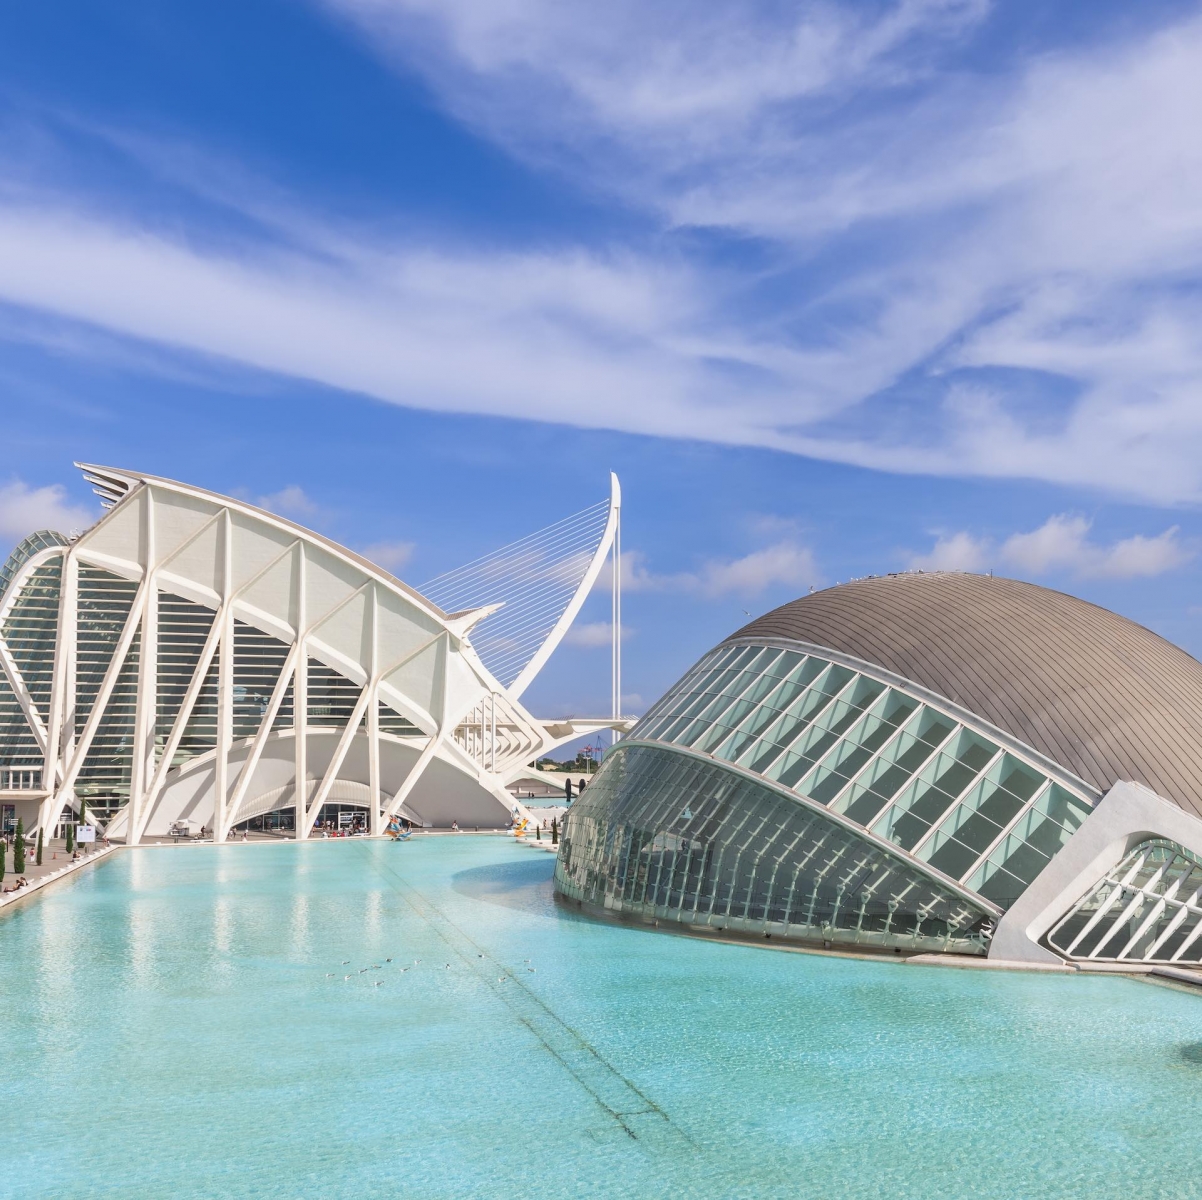 Das Hemisfèric ist ein einzigartiges und spektakuläres Gebäude, das von Santiago Calatrava entworfen wurde und ein großes menschliches Auge, das Auge der Weisheit, darstellt.  Dieses Element symbolisiert den Blick und die Beobachtung der Welt, die Besucher durch überraschende audiovisuelle Projektionen entdecken.